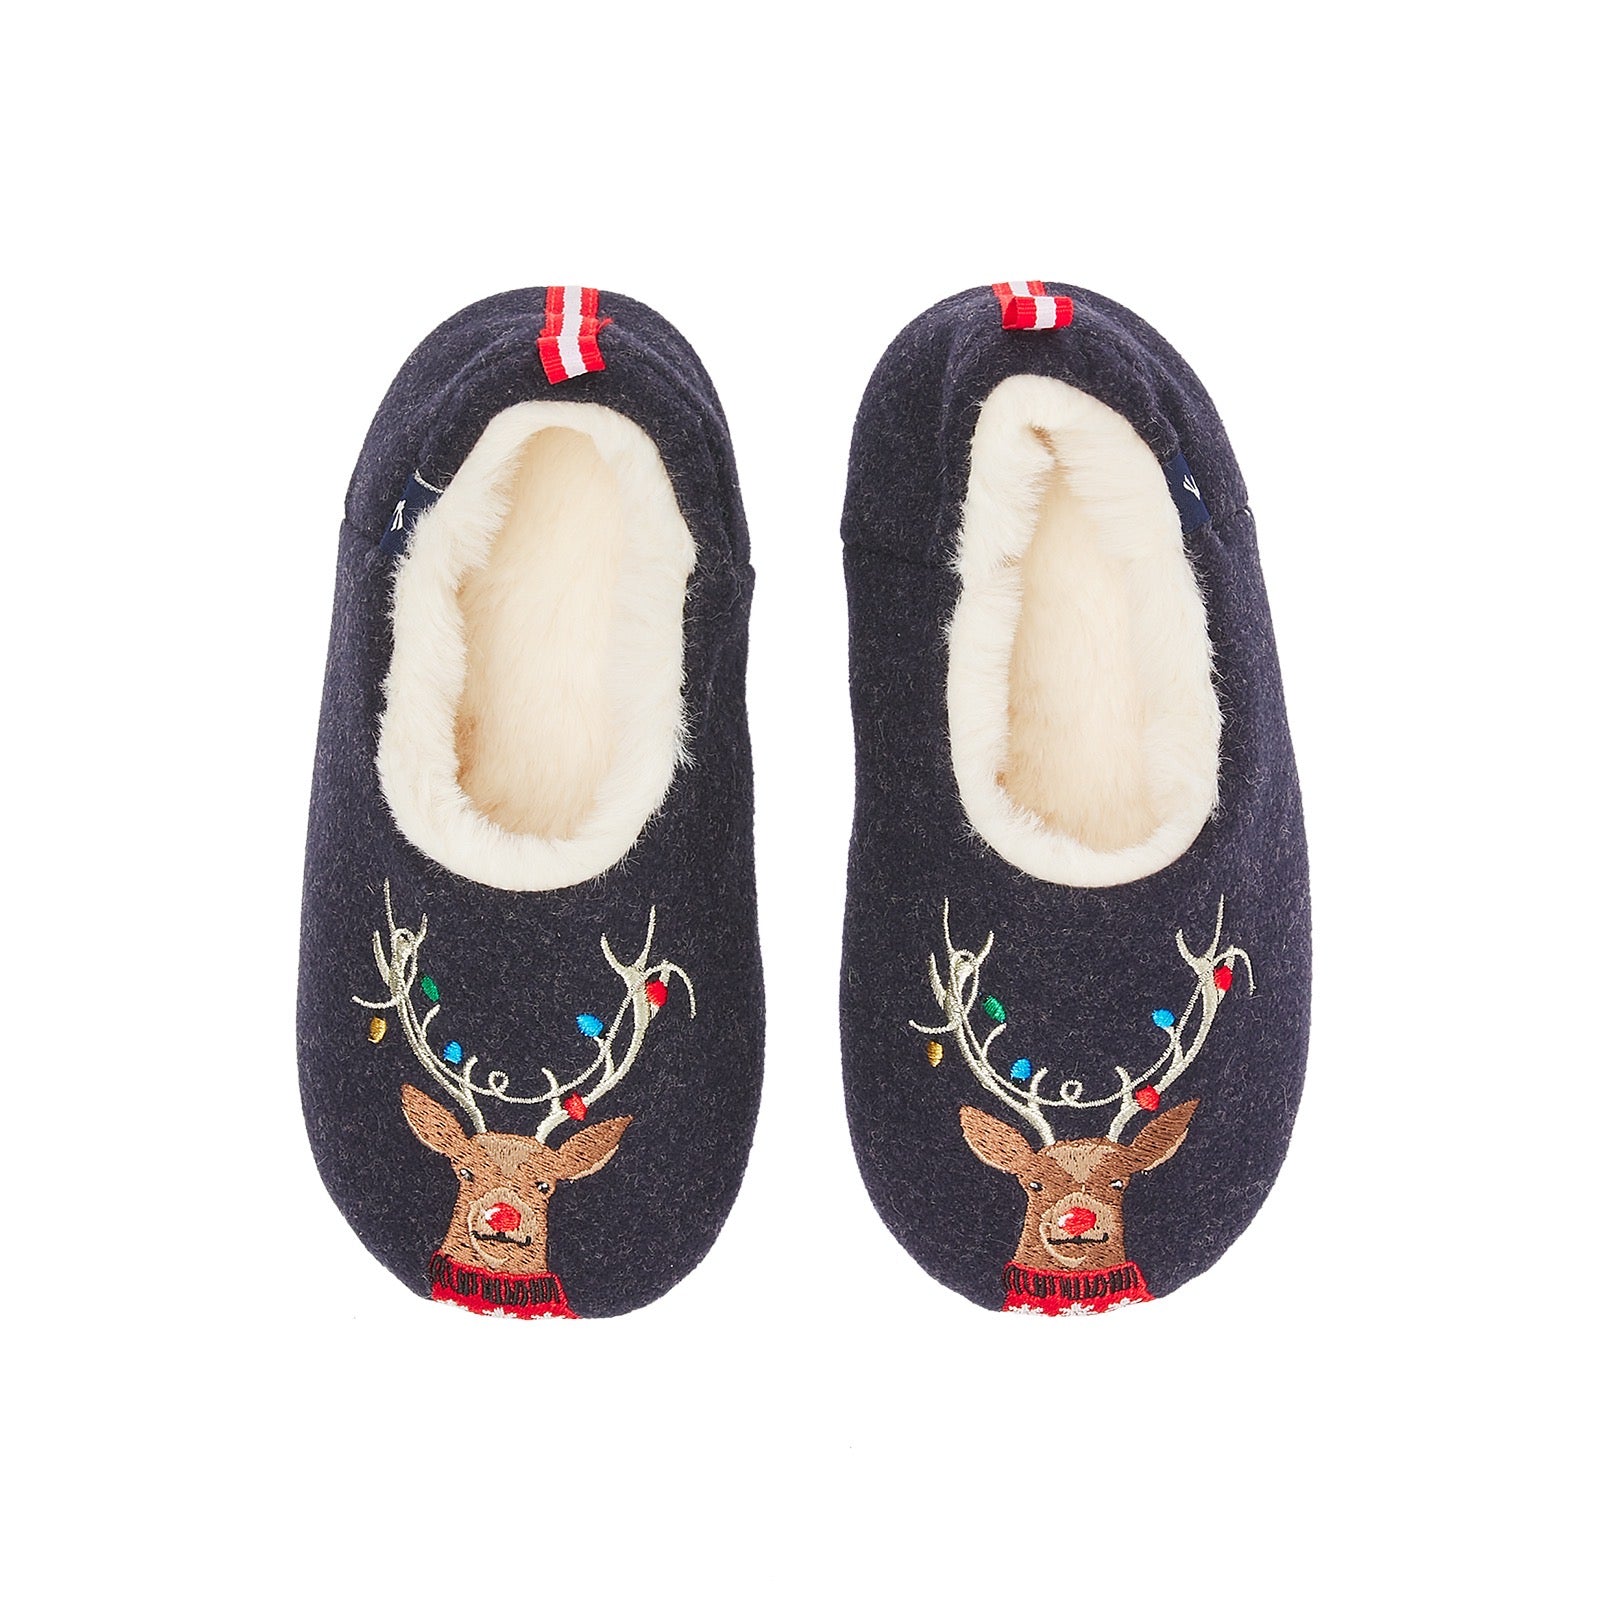 Joules Reindeer Slippers 218576 Footwear UK 8-9 / Navy,UK 10-11 / Navy,UK 12-13 / Navy,UK 1-2 / Navy,UK 3-4 / Navy